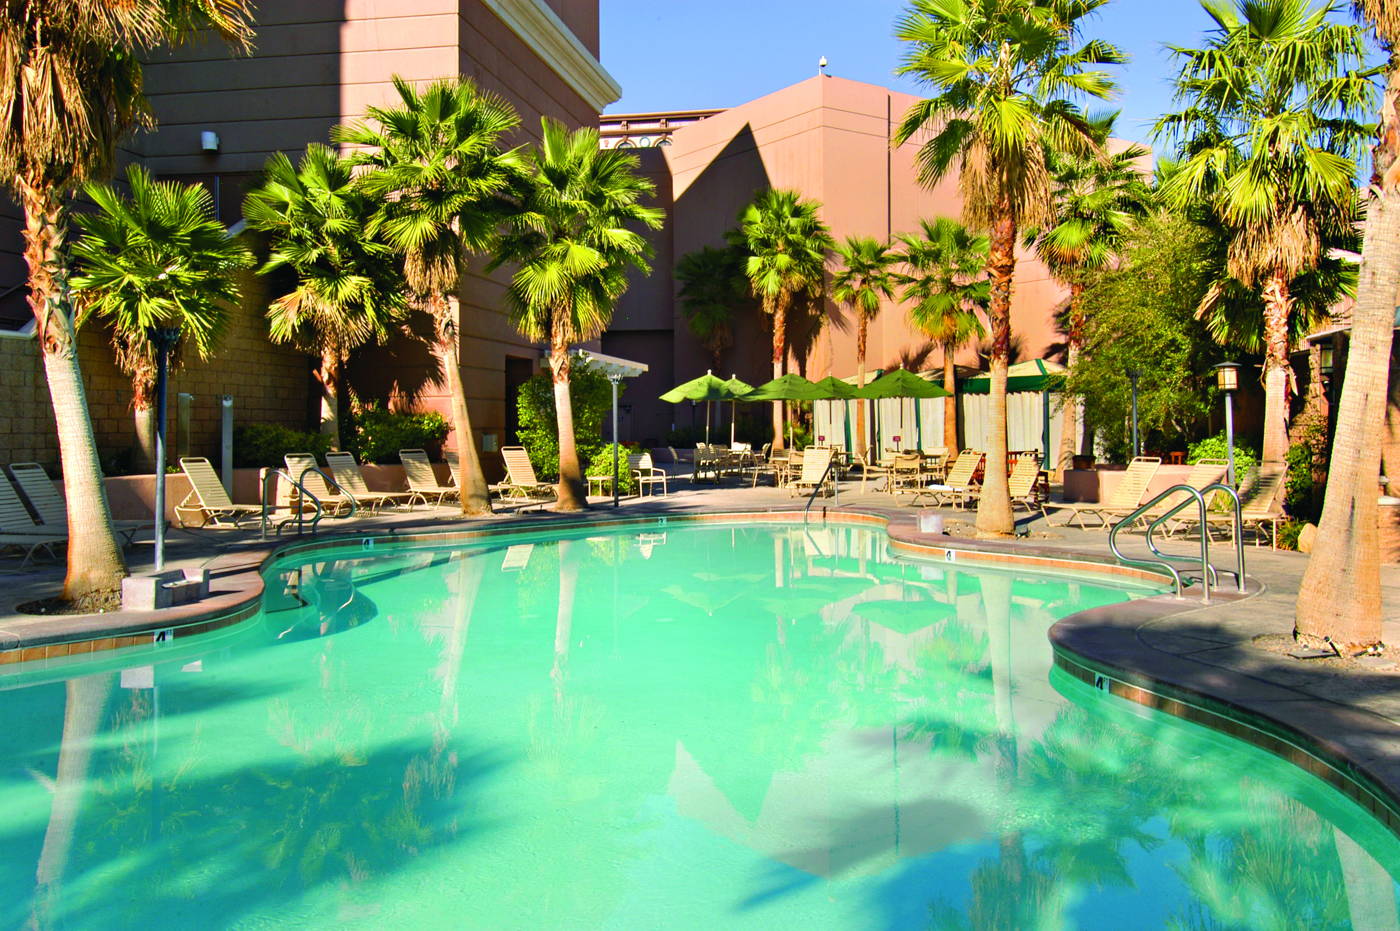 Resort Pool at Sam's Town Las Vegas